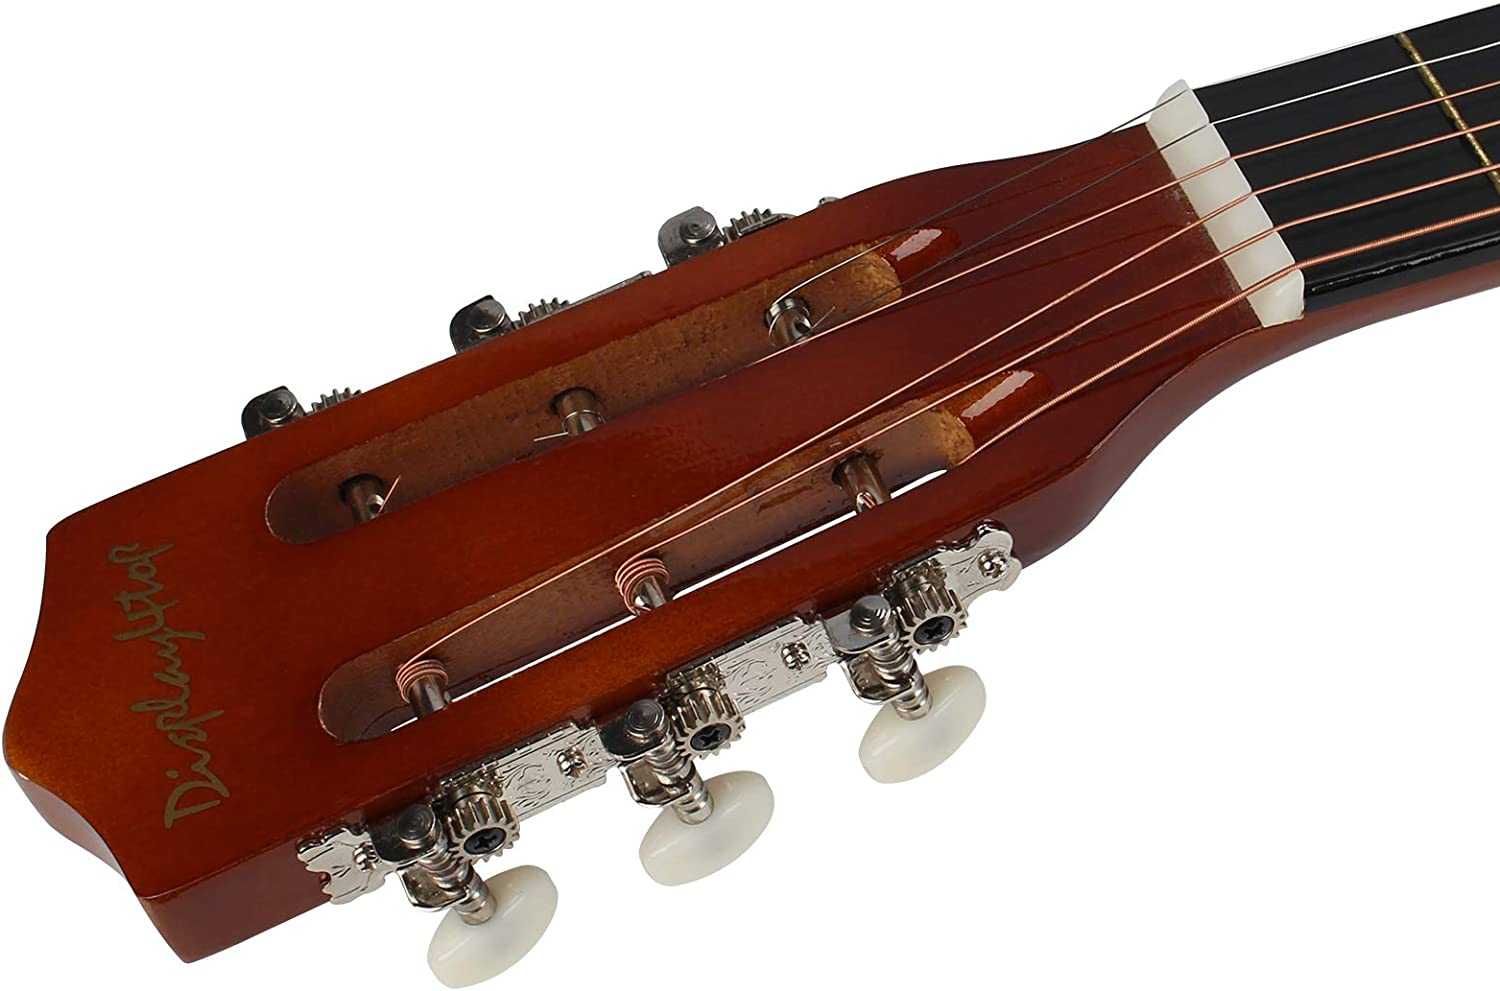 Guitarra acústica de 98 polegadas, para principiantes (castanho)